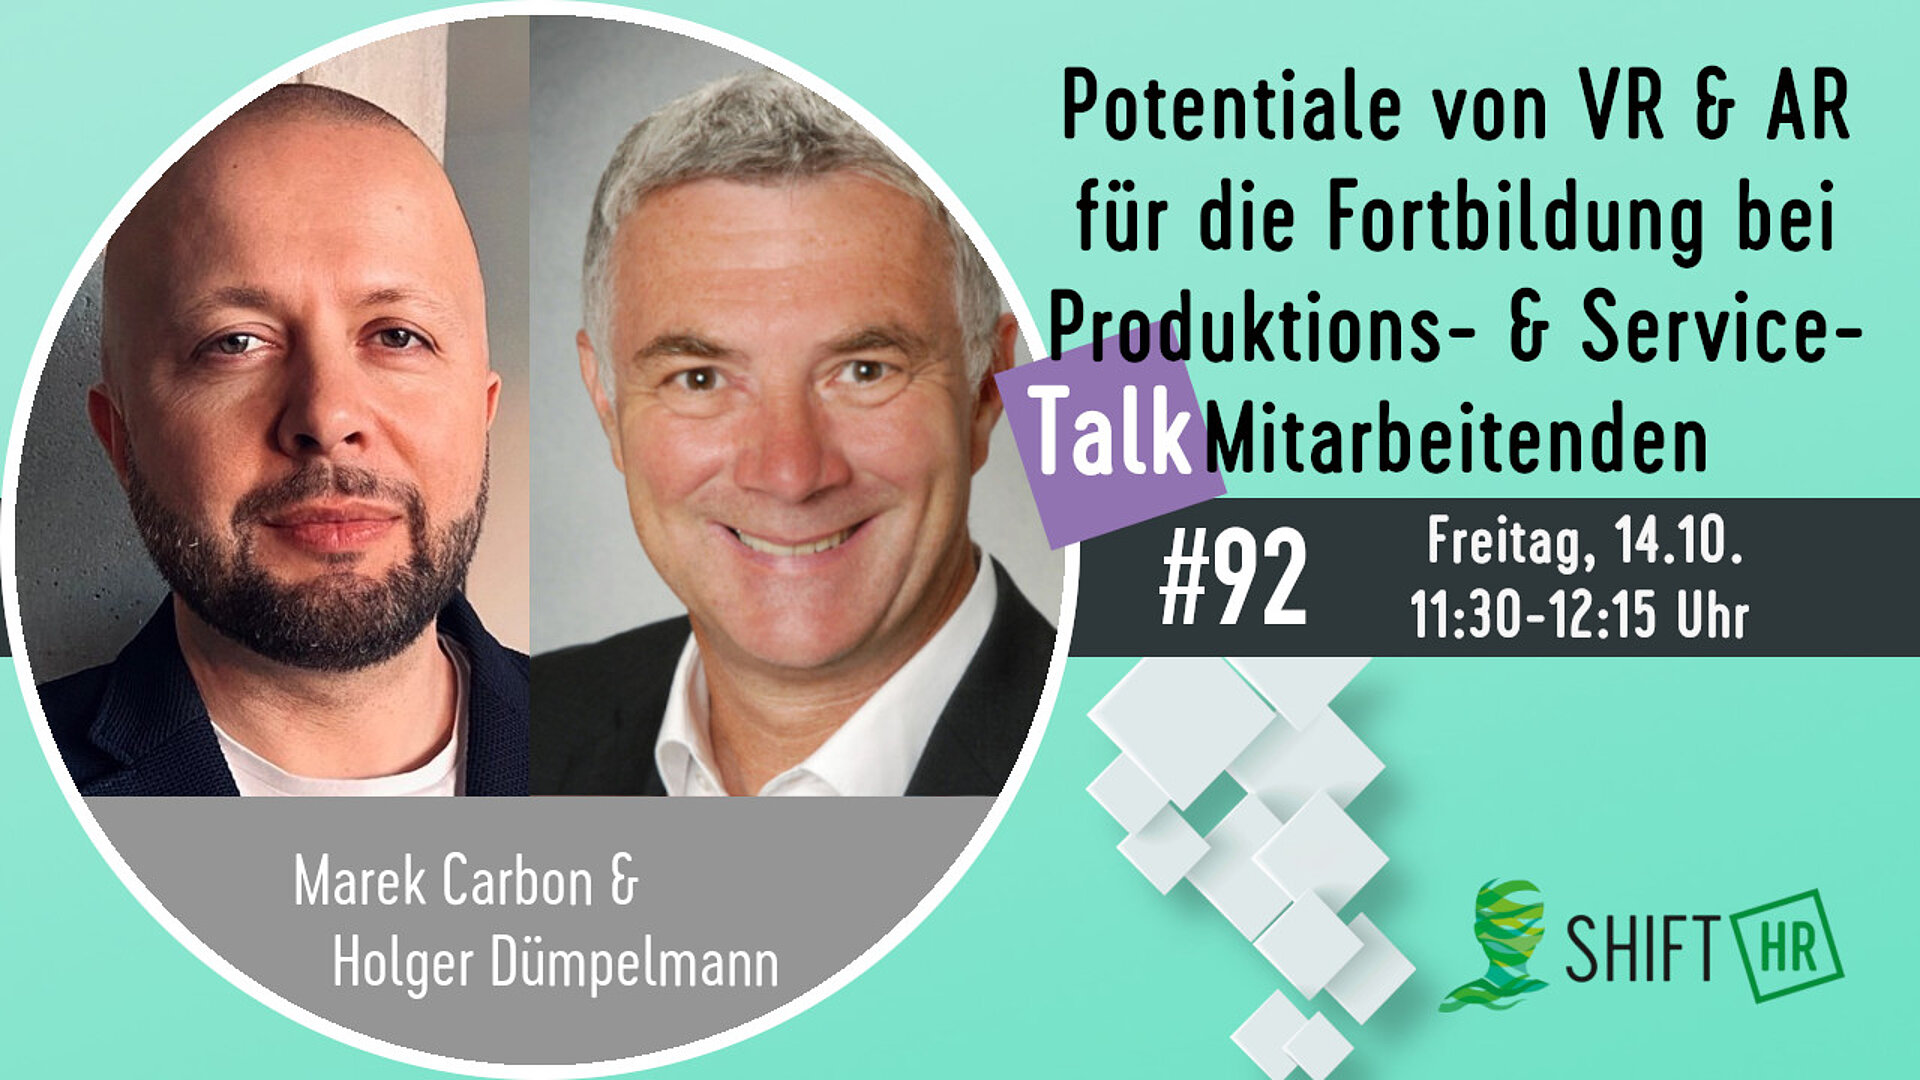 Im Gespräch mit Marek Carbon & Holger Dümpelmann zu besseren Lernergebnissen für Produktions- und Servicemitarbeiter im Kontext von VR und AR